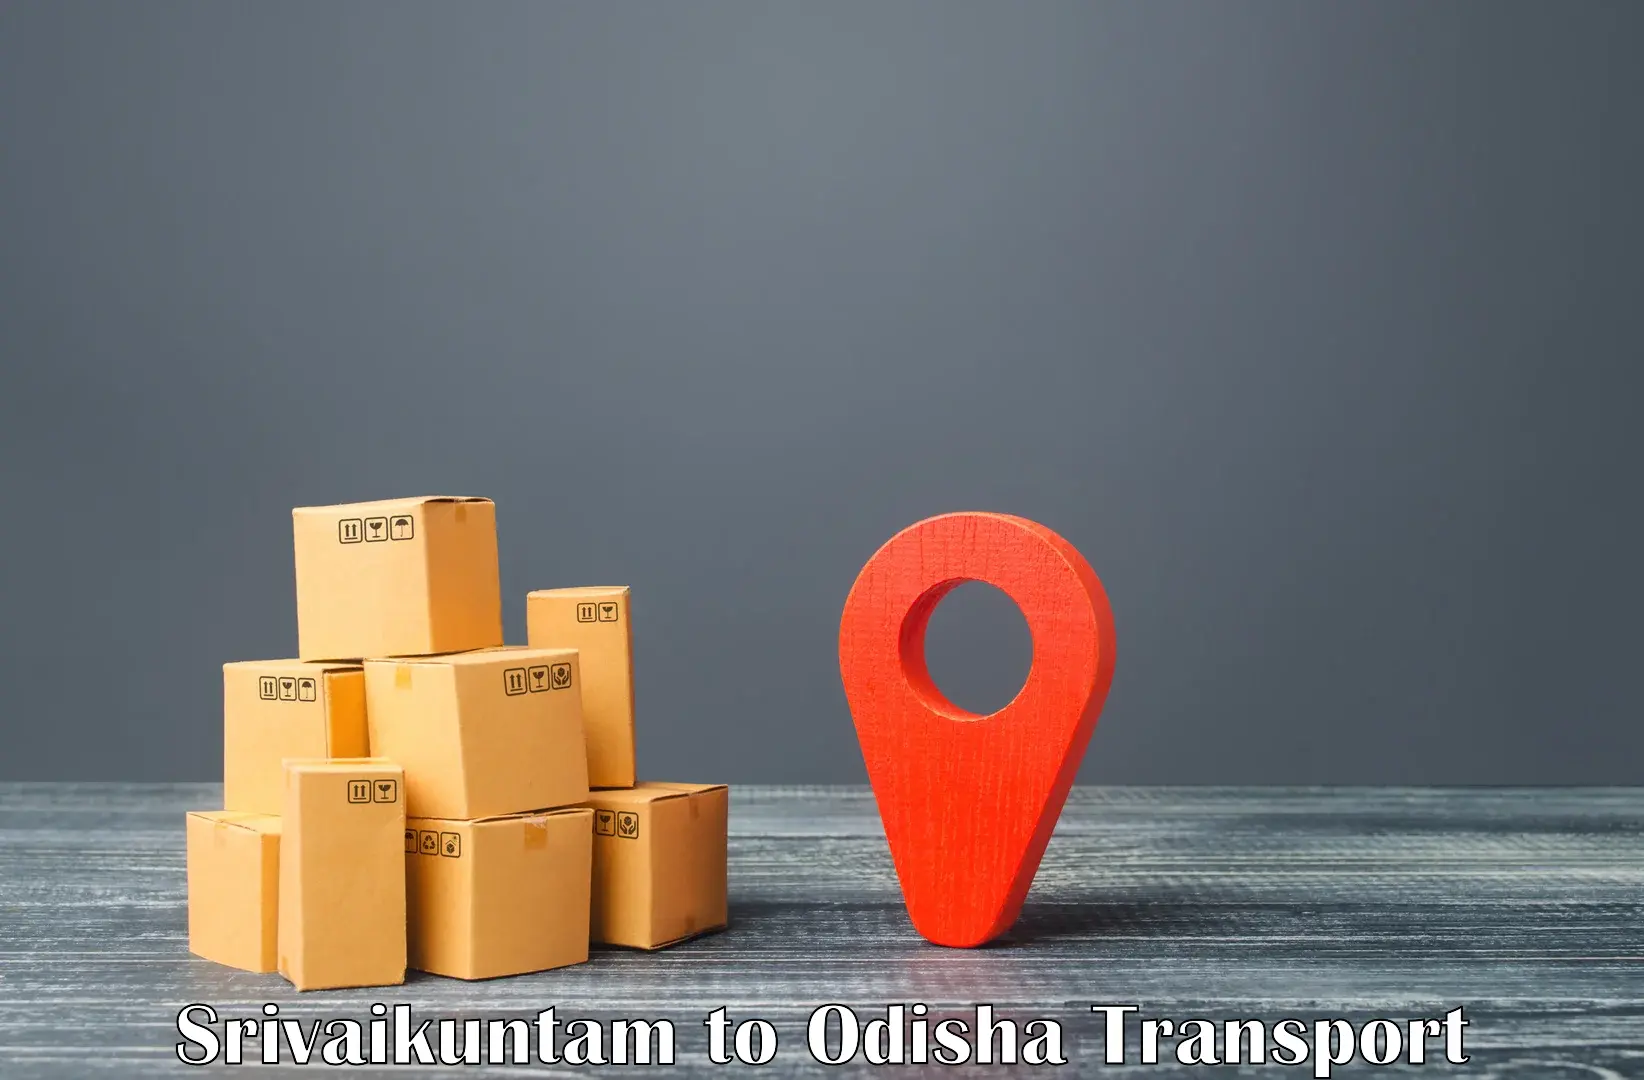 Cargo transport services Srivaikuntam to Morada